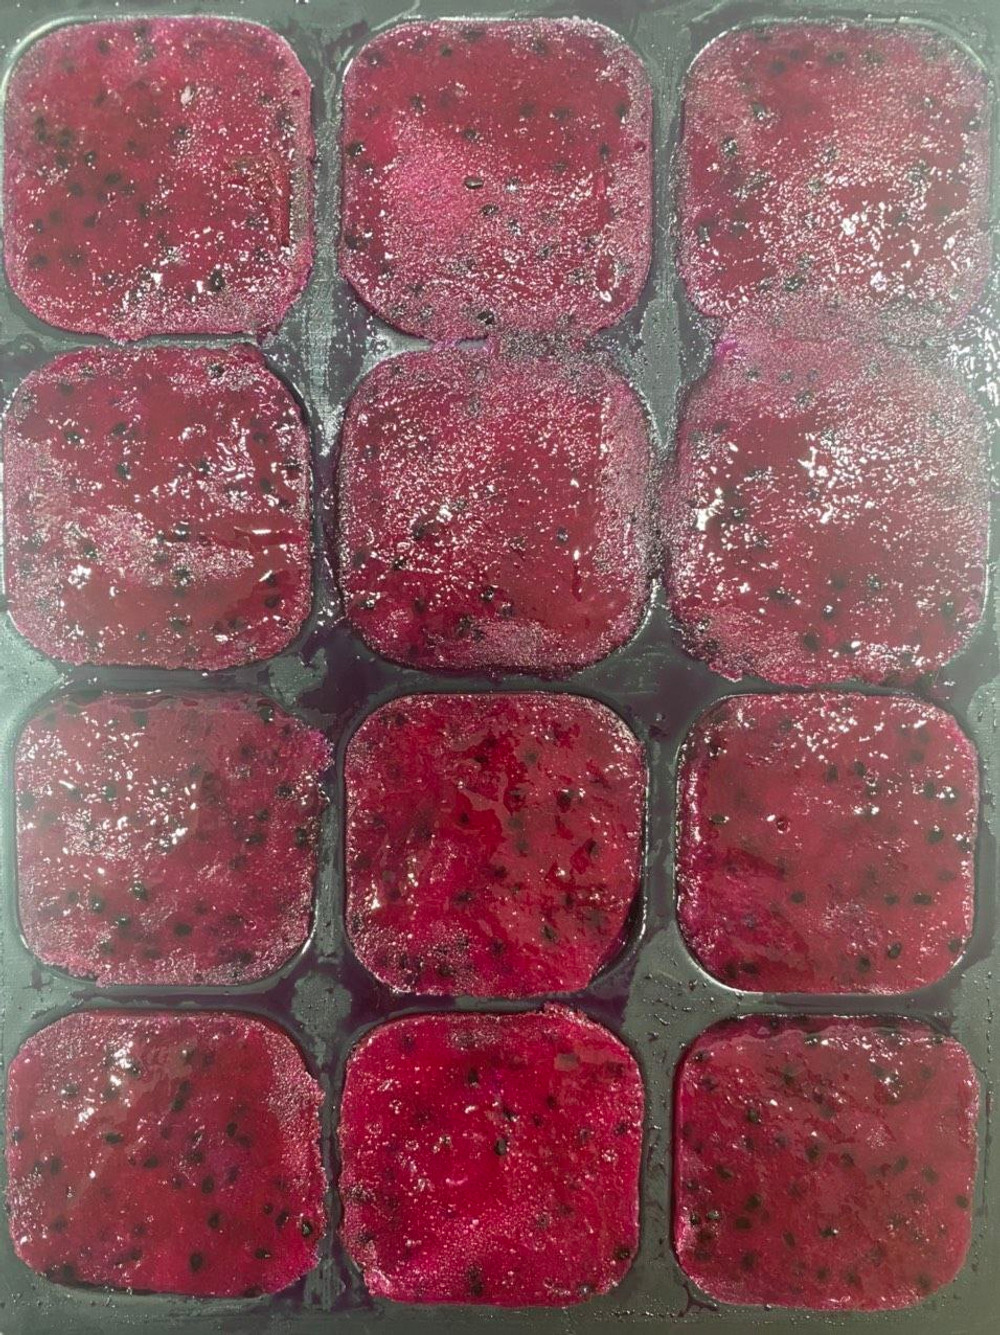 Драгонфрукт пюре замороженное Olmish Premium кубик в подложке 500 г - ящик